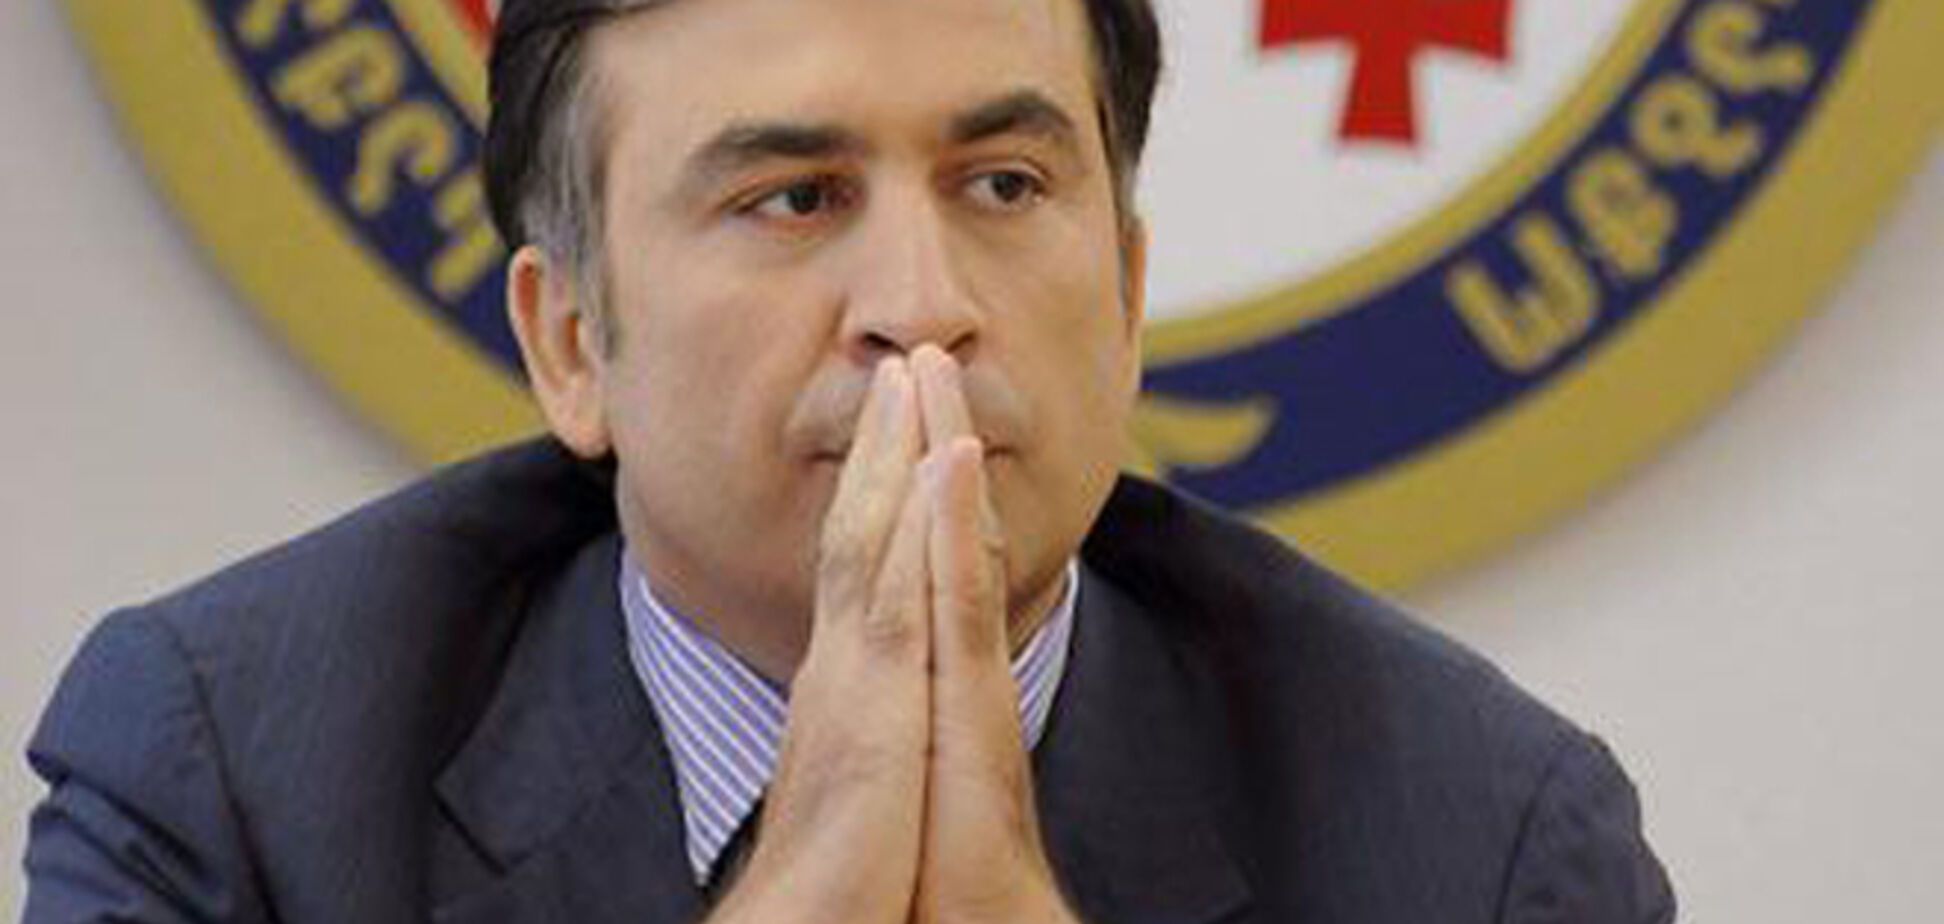 Грузия объявила  Саакашвили во внутренний розыск